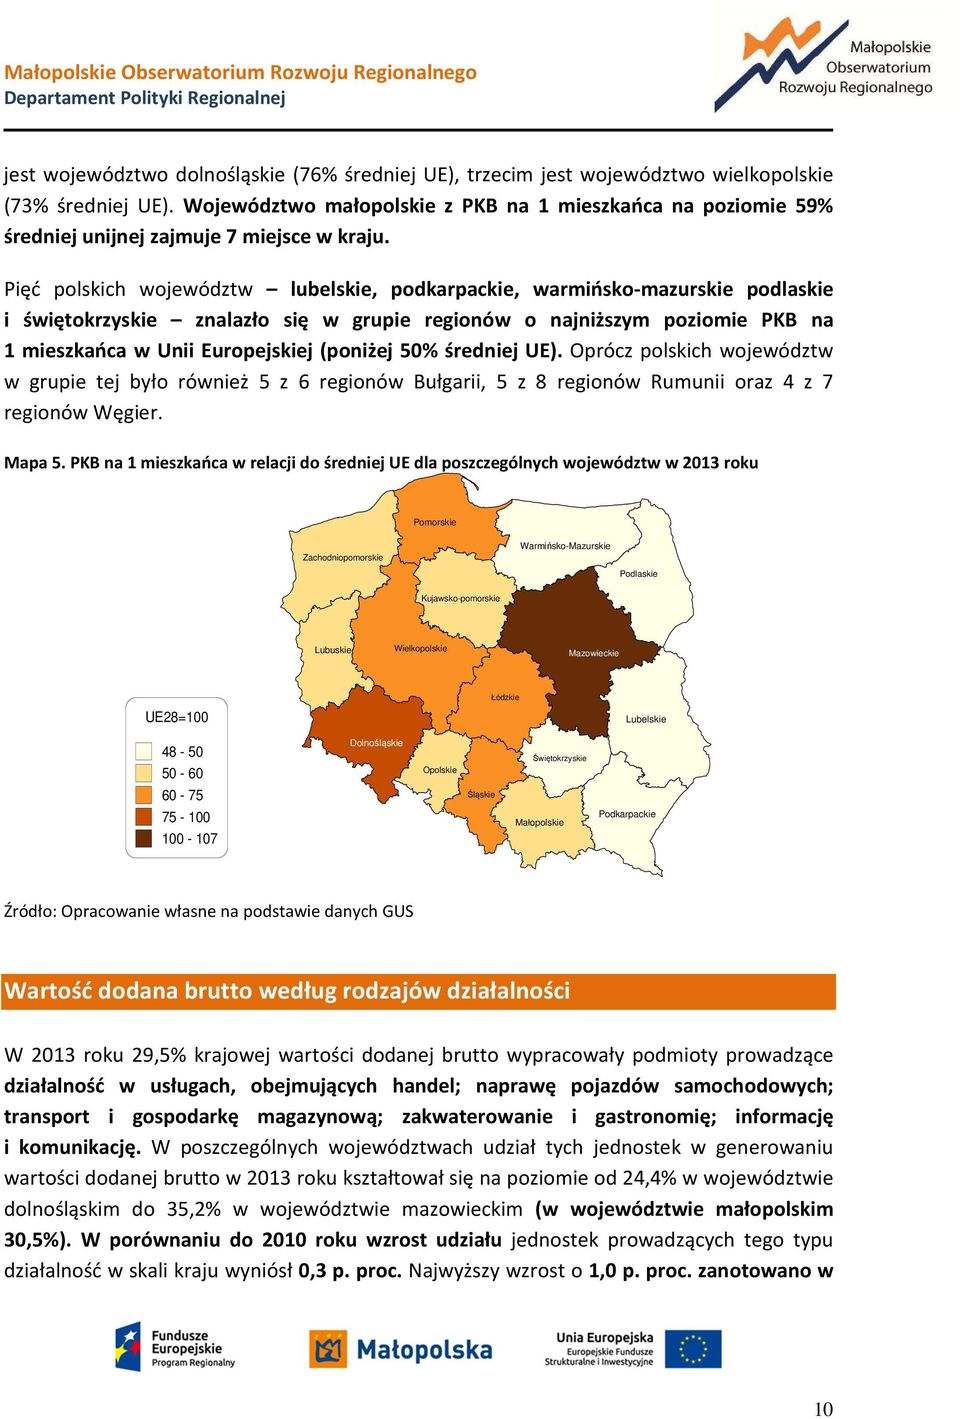 Pięć polskich województw lubelskie, podkarpackie, warmińsko-mazurskie podlaskie i świętokrzyskie znalazło się w grupie regionów o najniższym poziomie PKB na 1 mieszkańca w Unii Europejskiej (poniżej